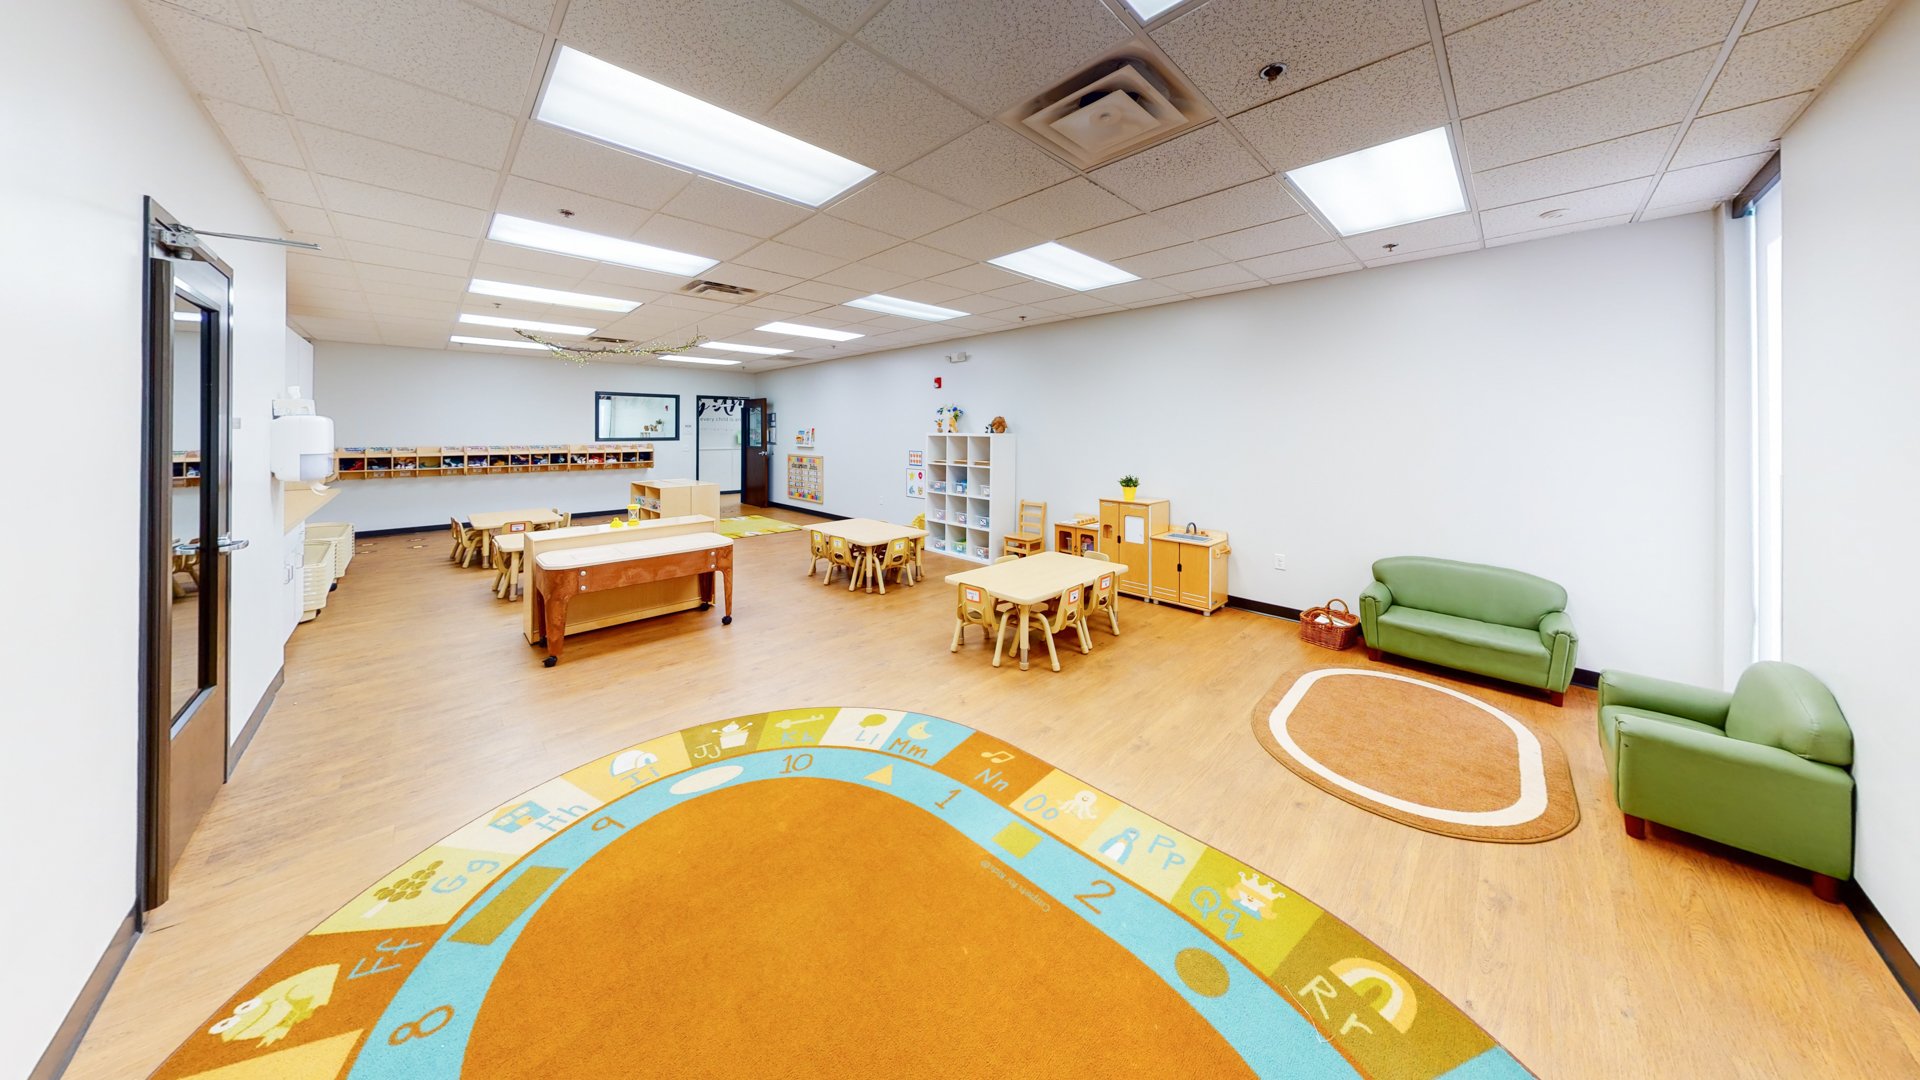 Childrens-Treehouse-Learning-Center-37.jpg